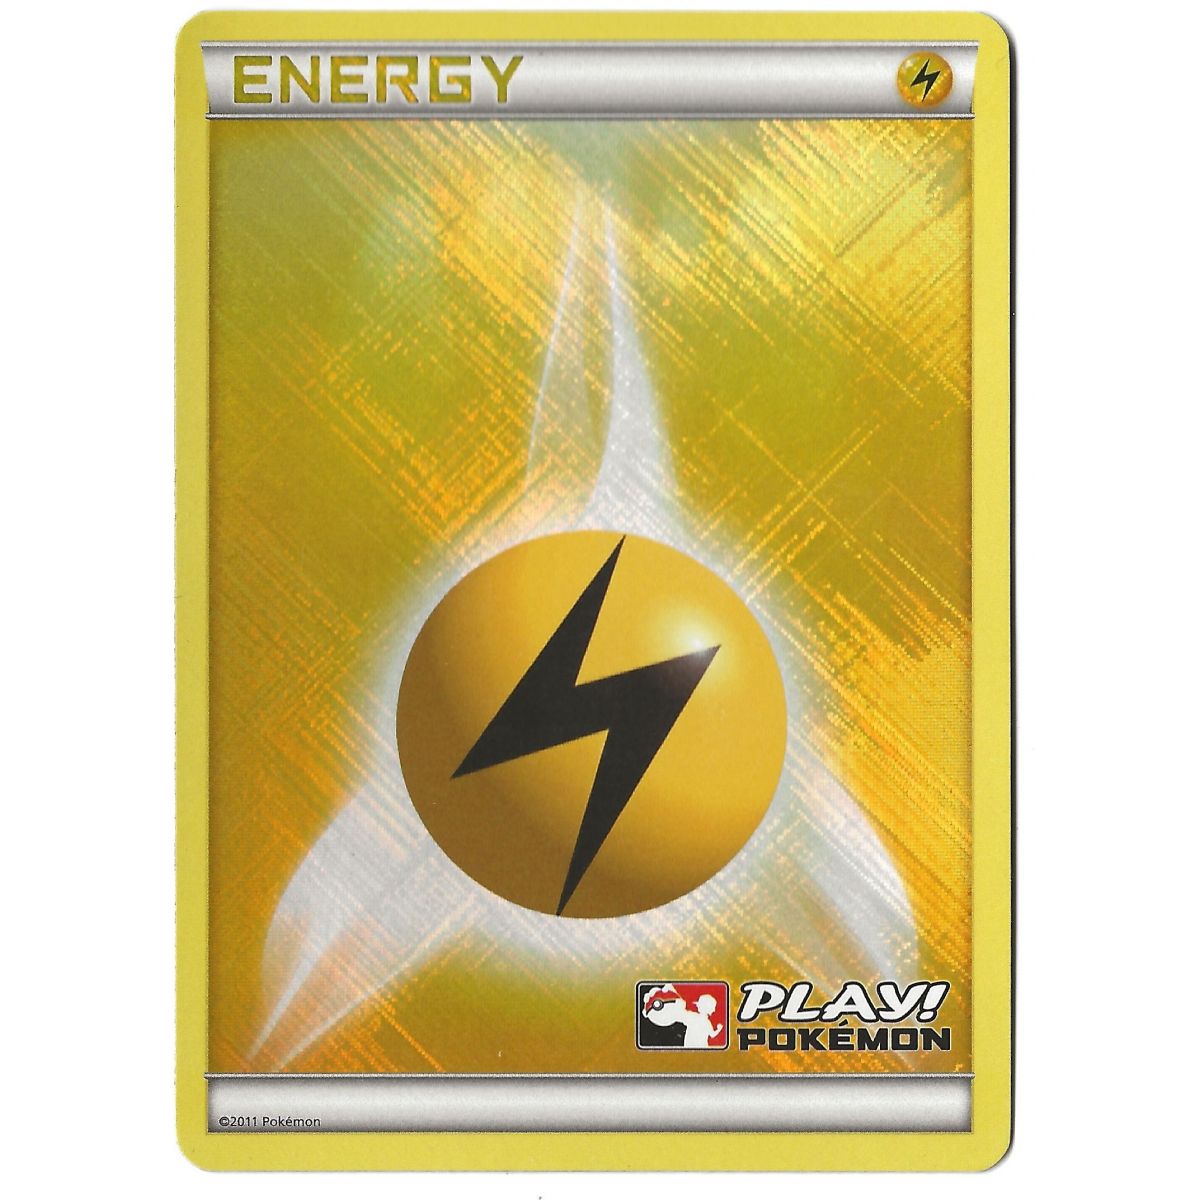 Item Energy Electric Play! Pokémon - Reverse Rare - 2011